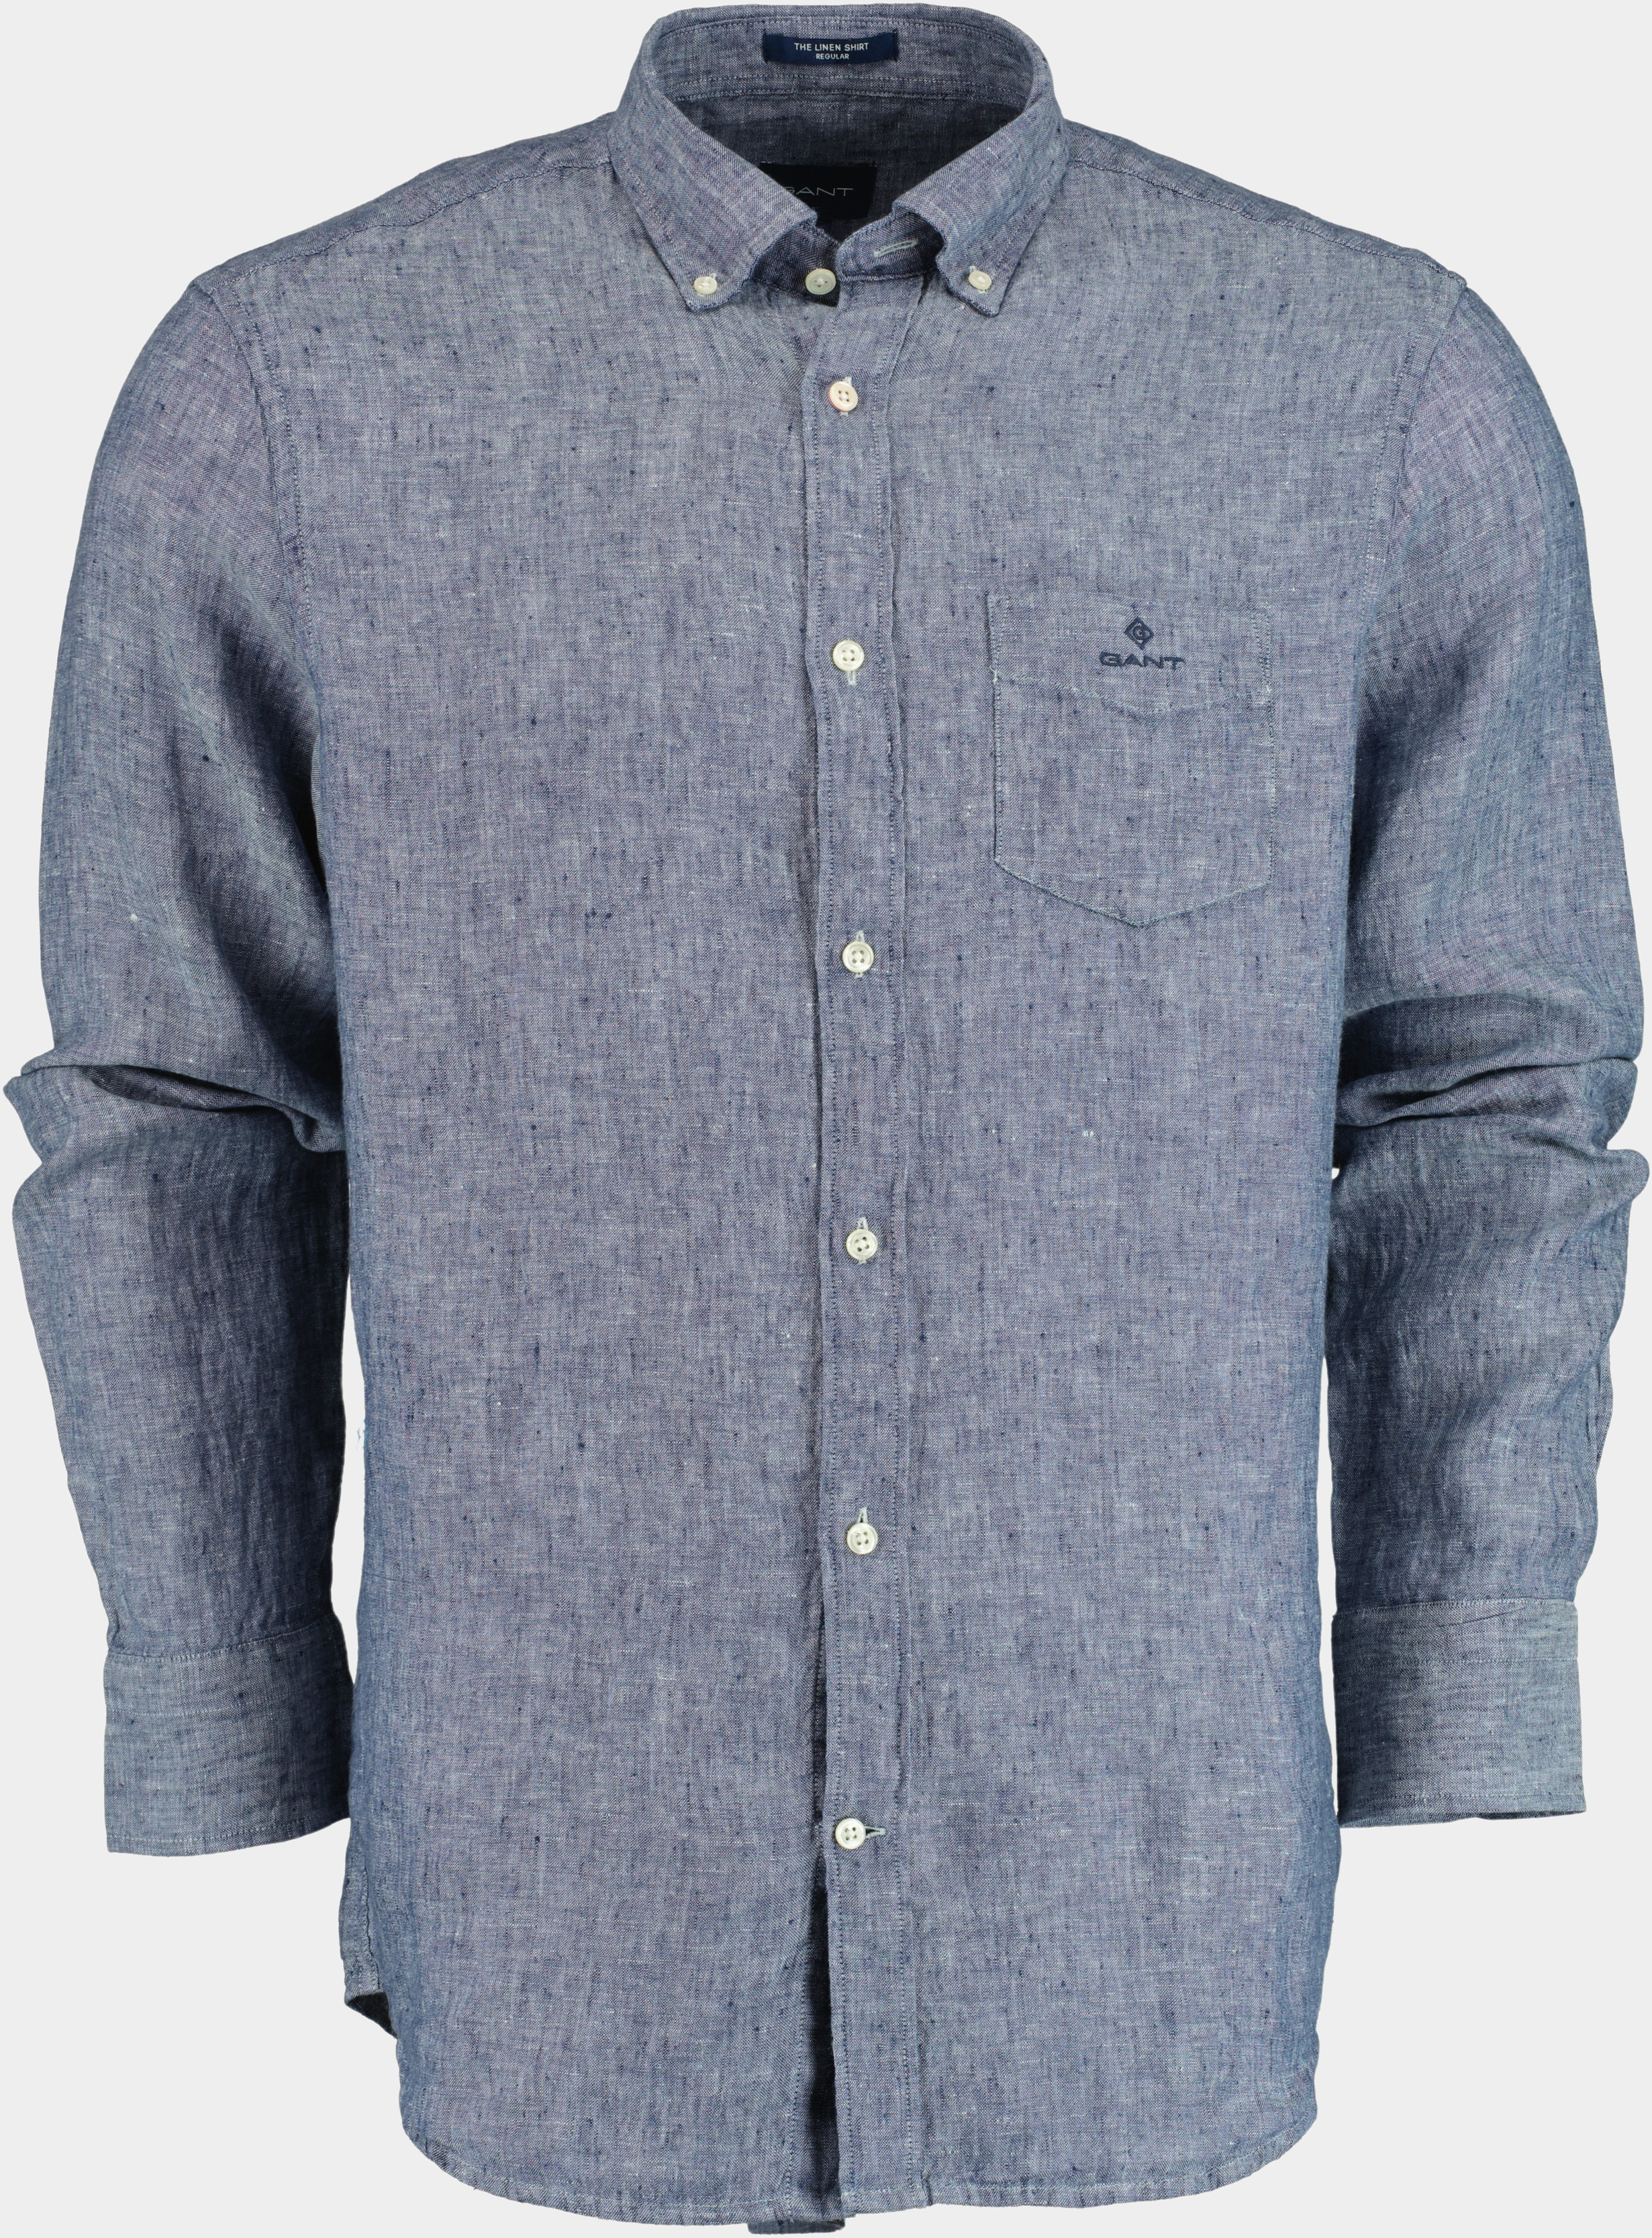 Gant Casual hemd lange mouw Blauw Overhemd blauw 100% linnen 3012420/423